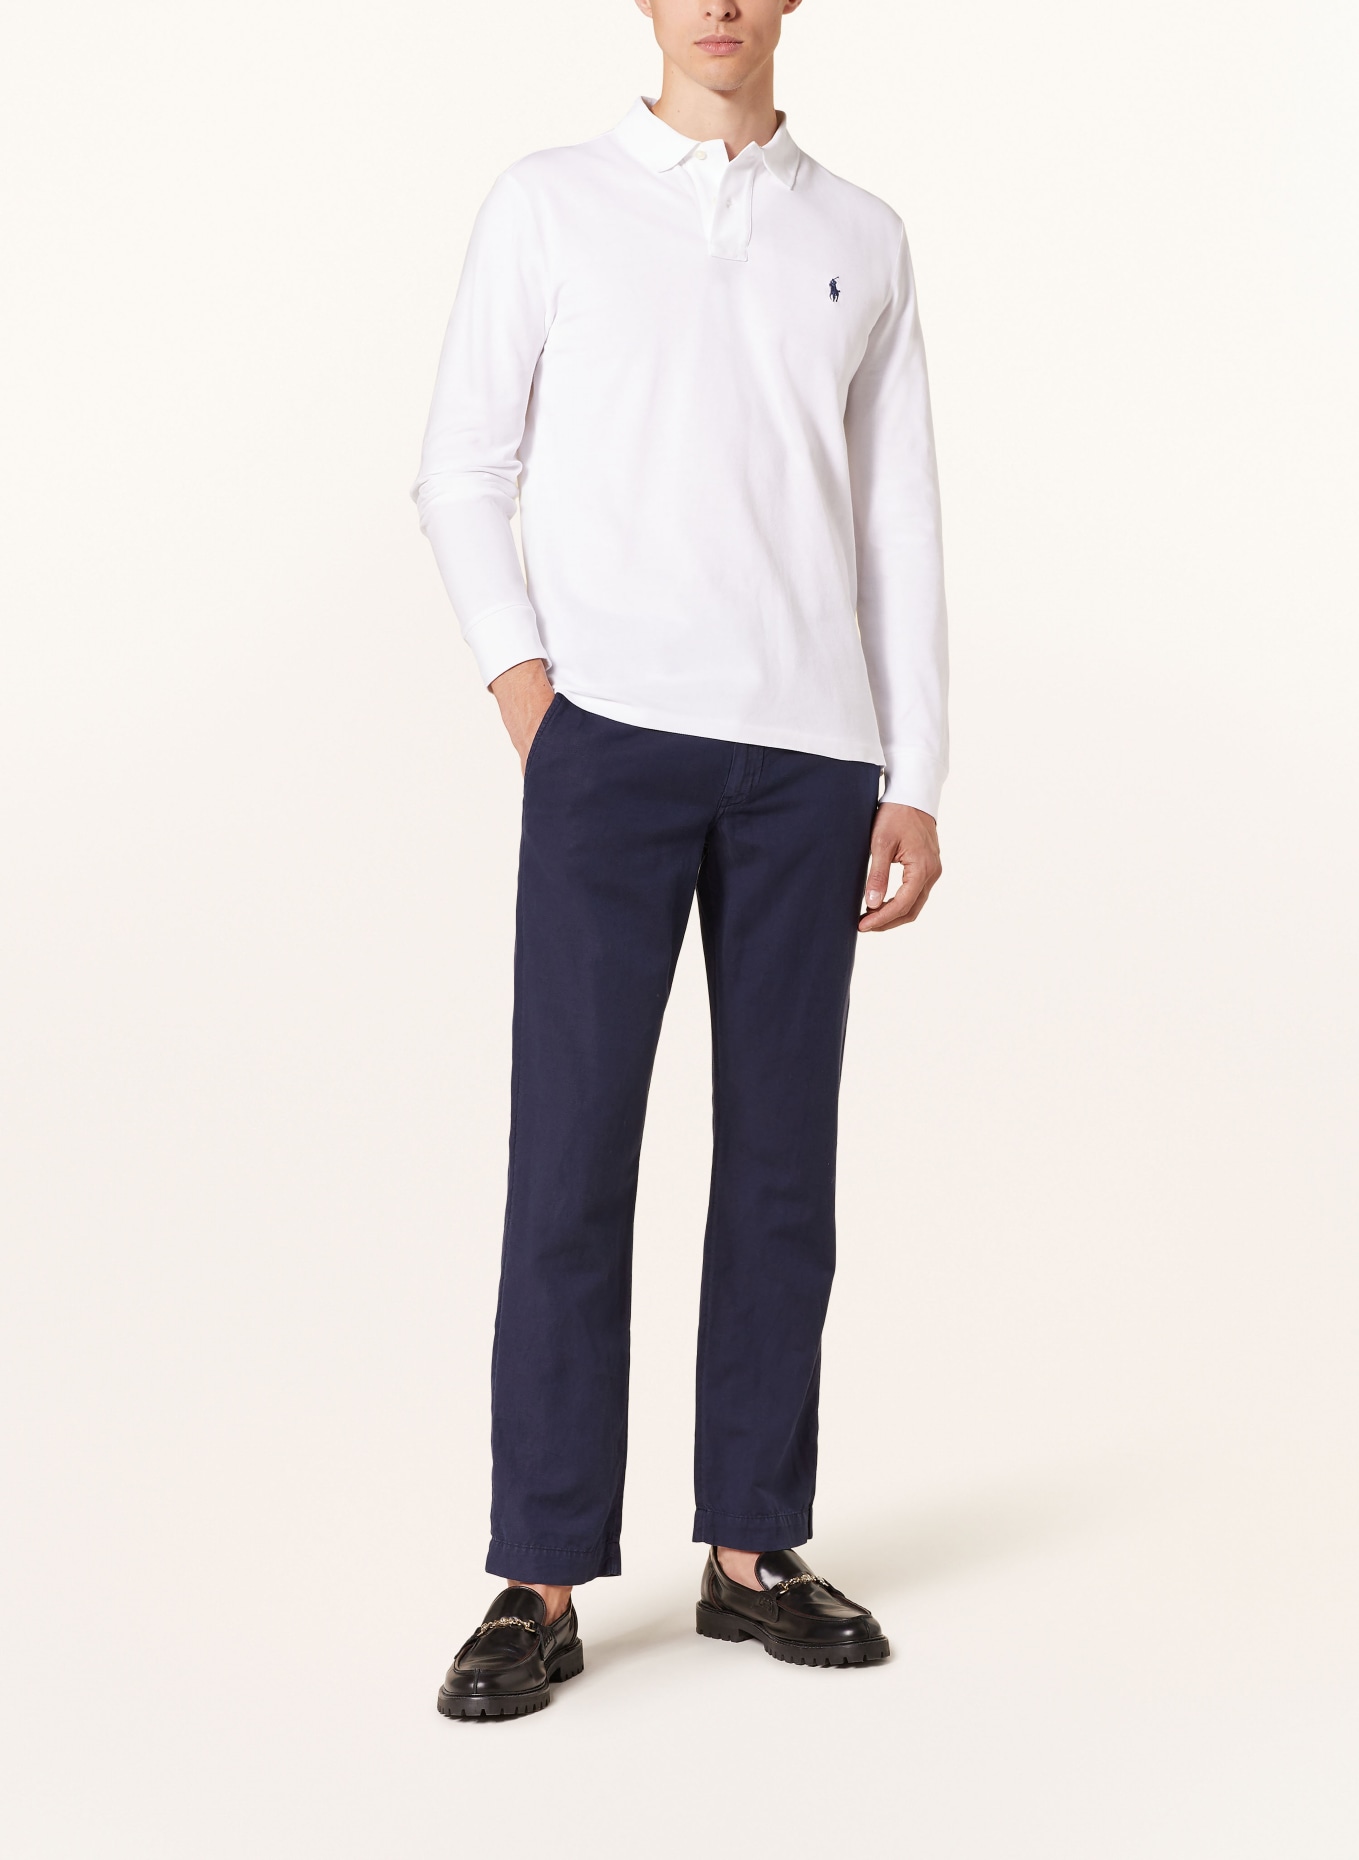 POLO RALPH LAUREN Piqué polo shirt custom slim fit, Color: WHITE (Image 2)